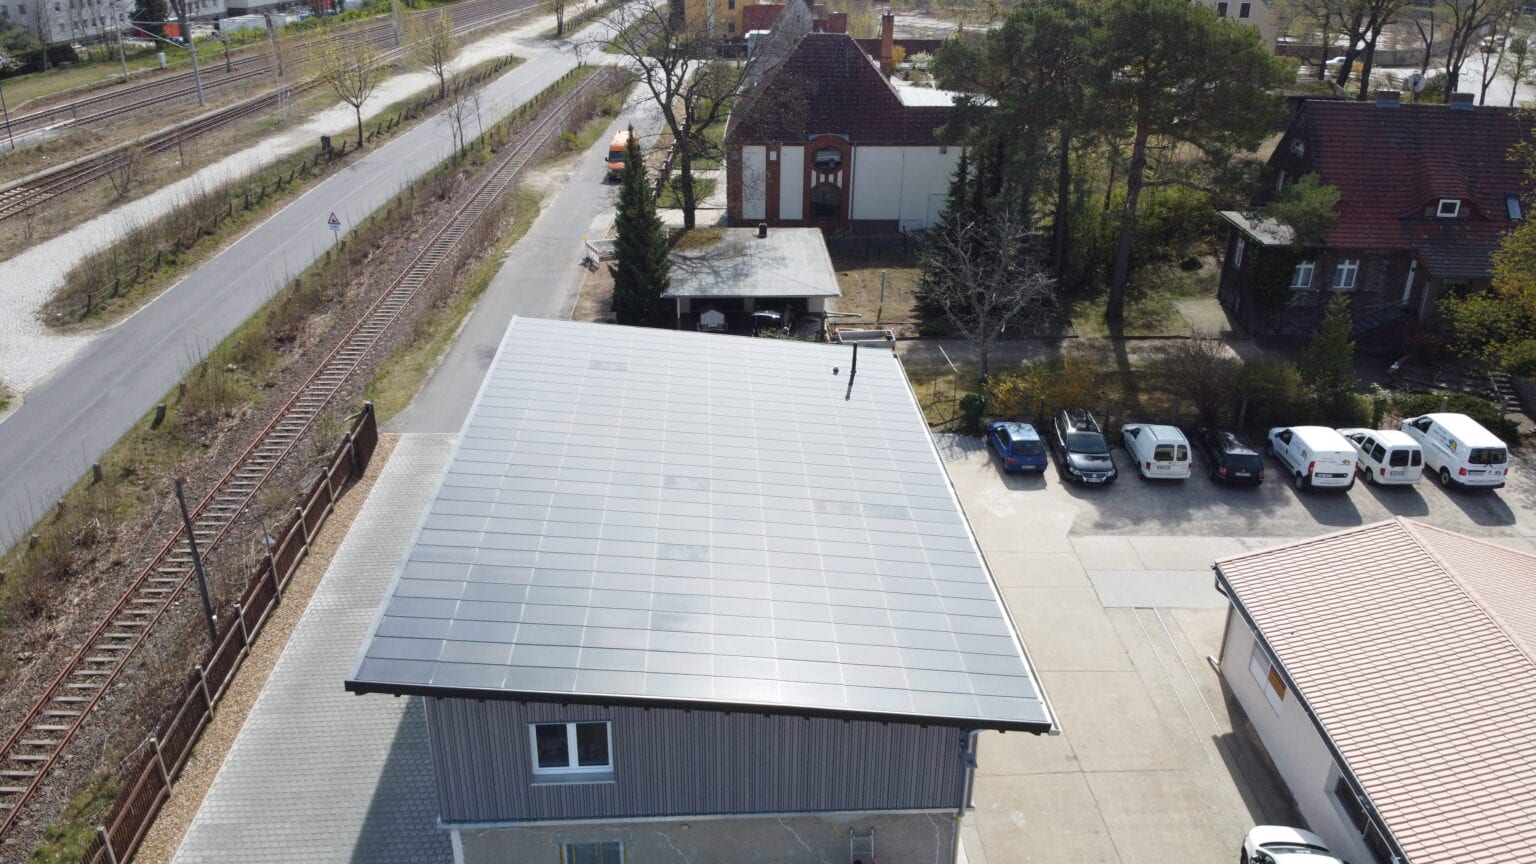 Ennogie-Solardach in Lübben: Einheitliche Dachfläche, Bahngleise am linken Bildrand